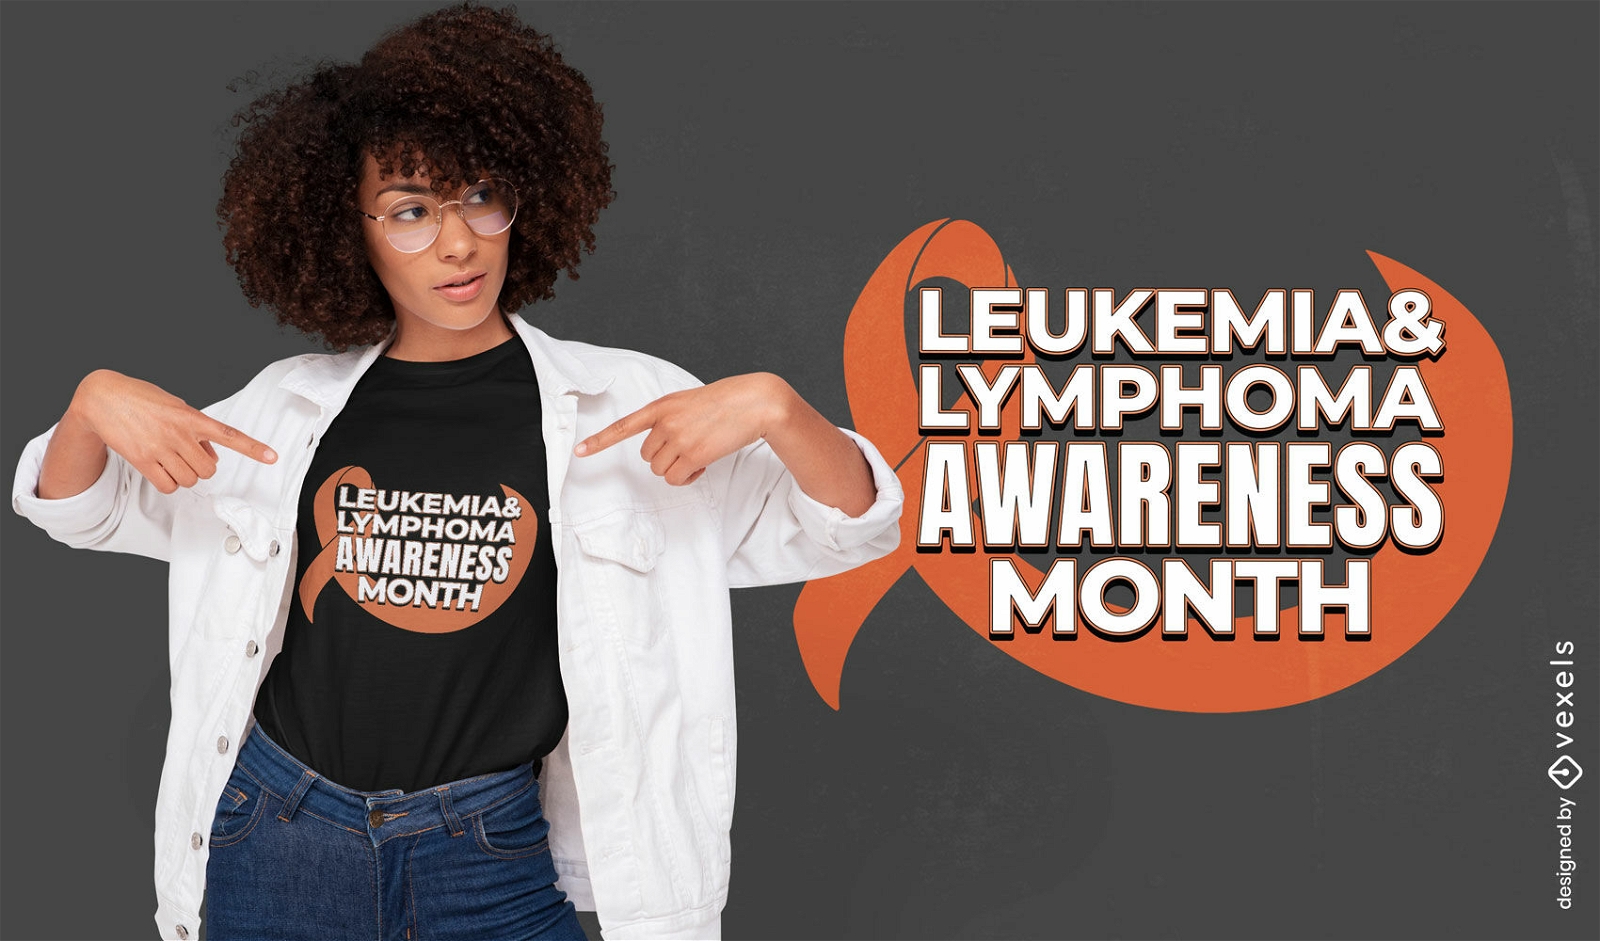 Diseño de camiseta de concientización sobre leucemia y linfoma.